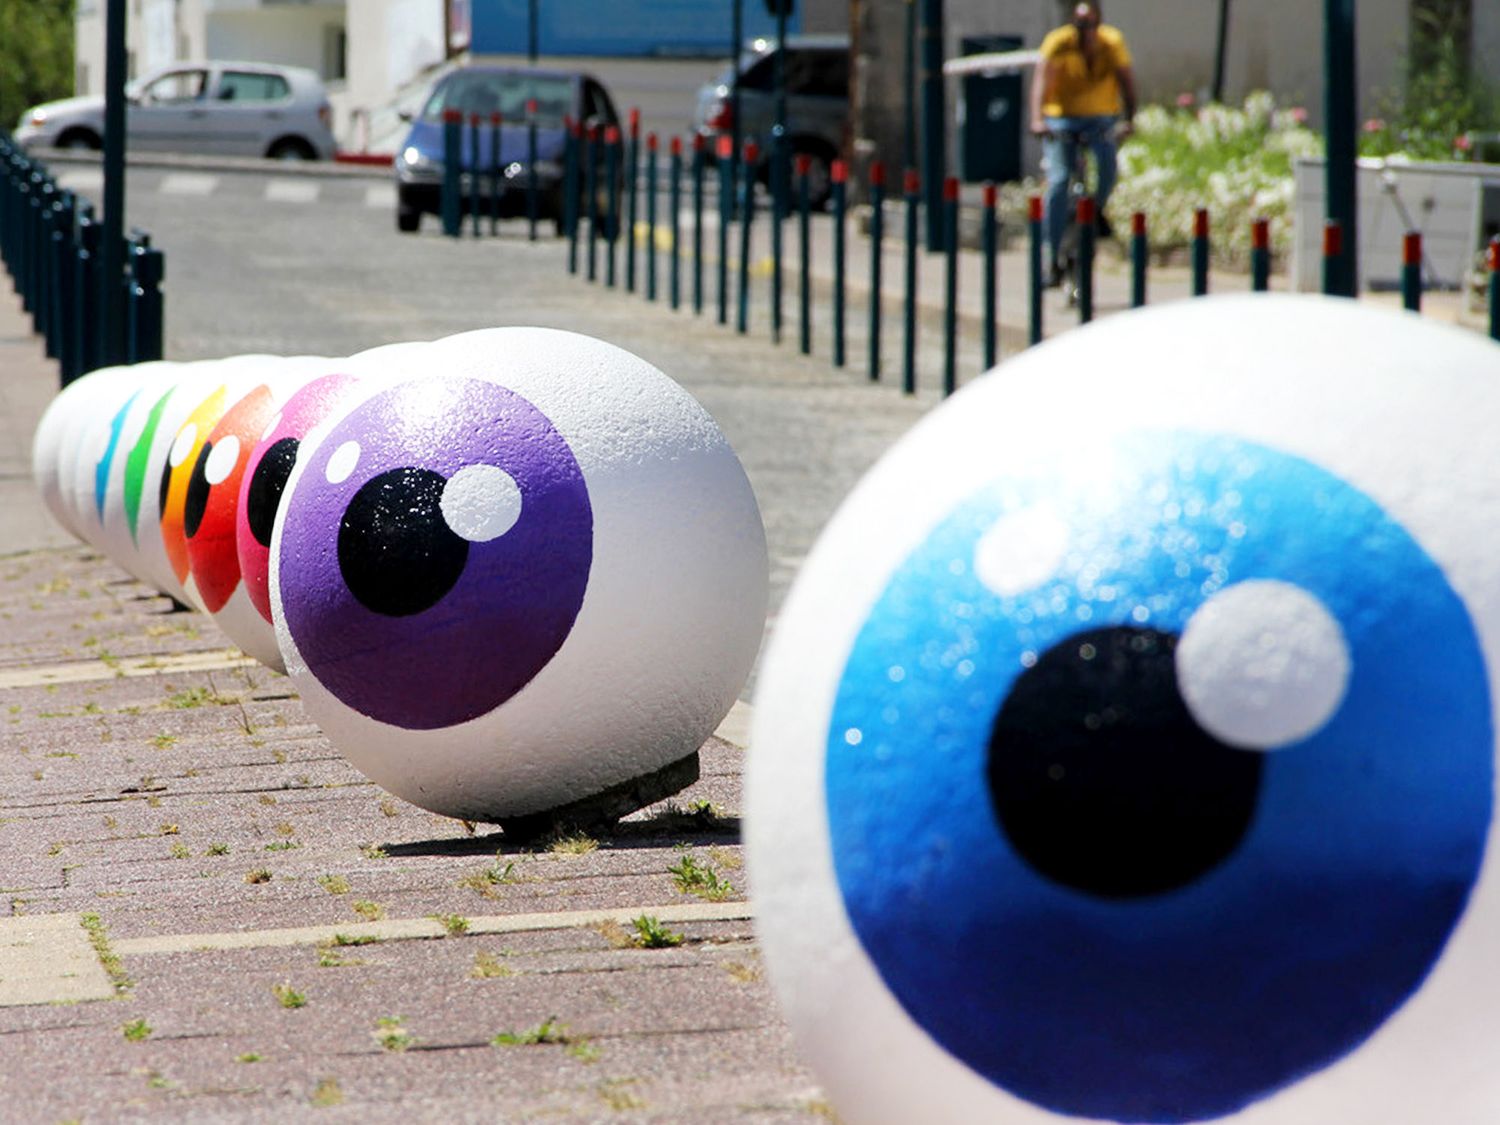 L’œil du CyKlop se décline sous différentes formes pour mieux observer les passants. Ici, les “Eye Balls” commissionnés par la ville de Pantin et réalisés sur les berges du canal de l'Ourcq à Paris.